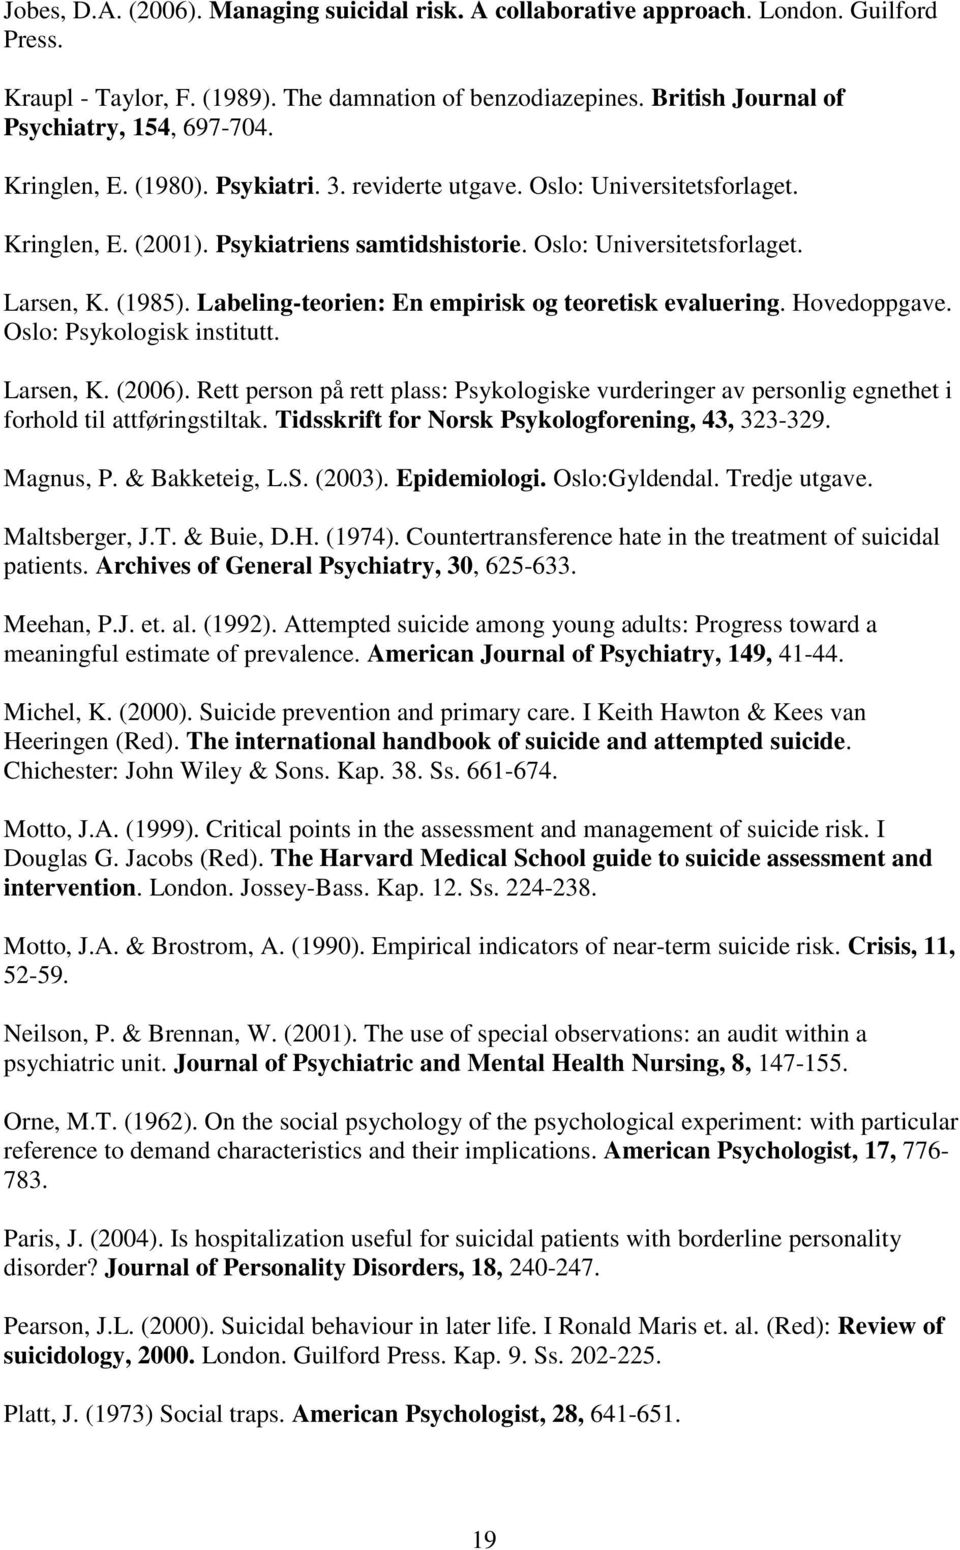 Labeling-teorien: En empirisk og teoretisk evaluering. Hovedoppgave. Oslo: Psykologisk institutt. Larsen, K. (2006).